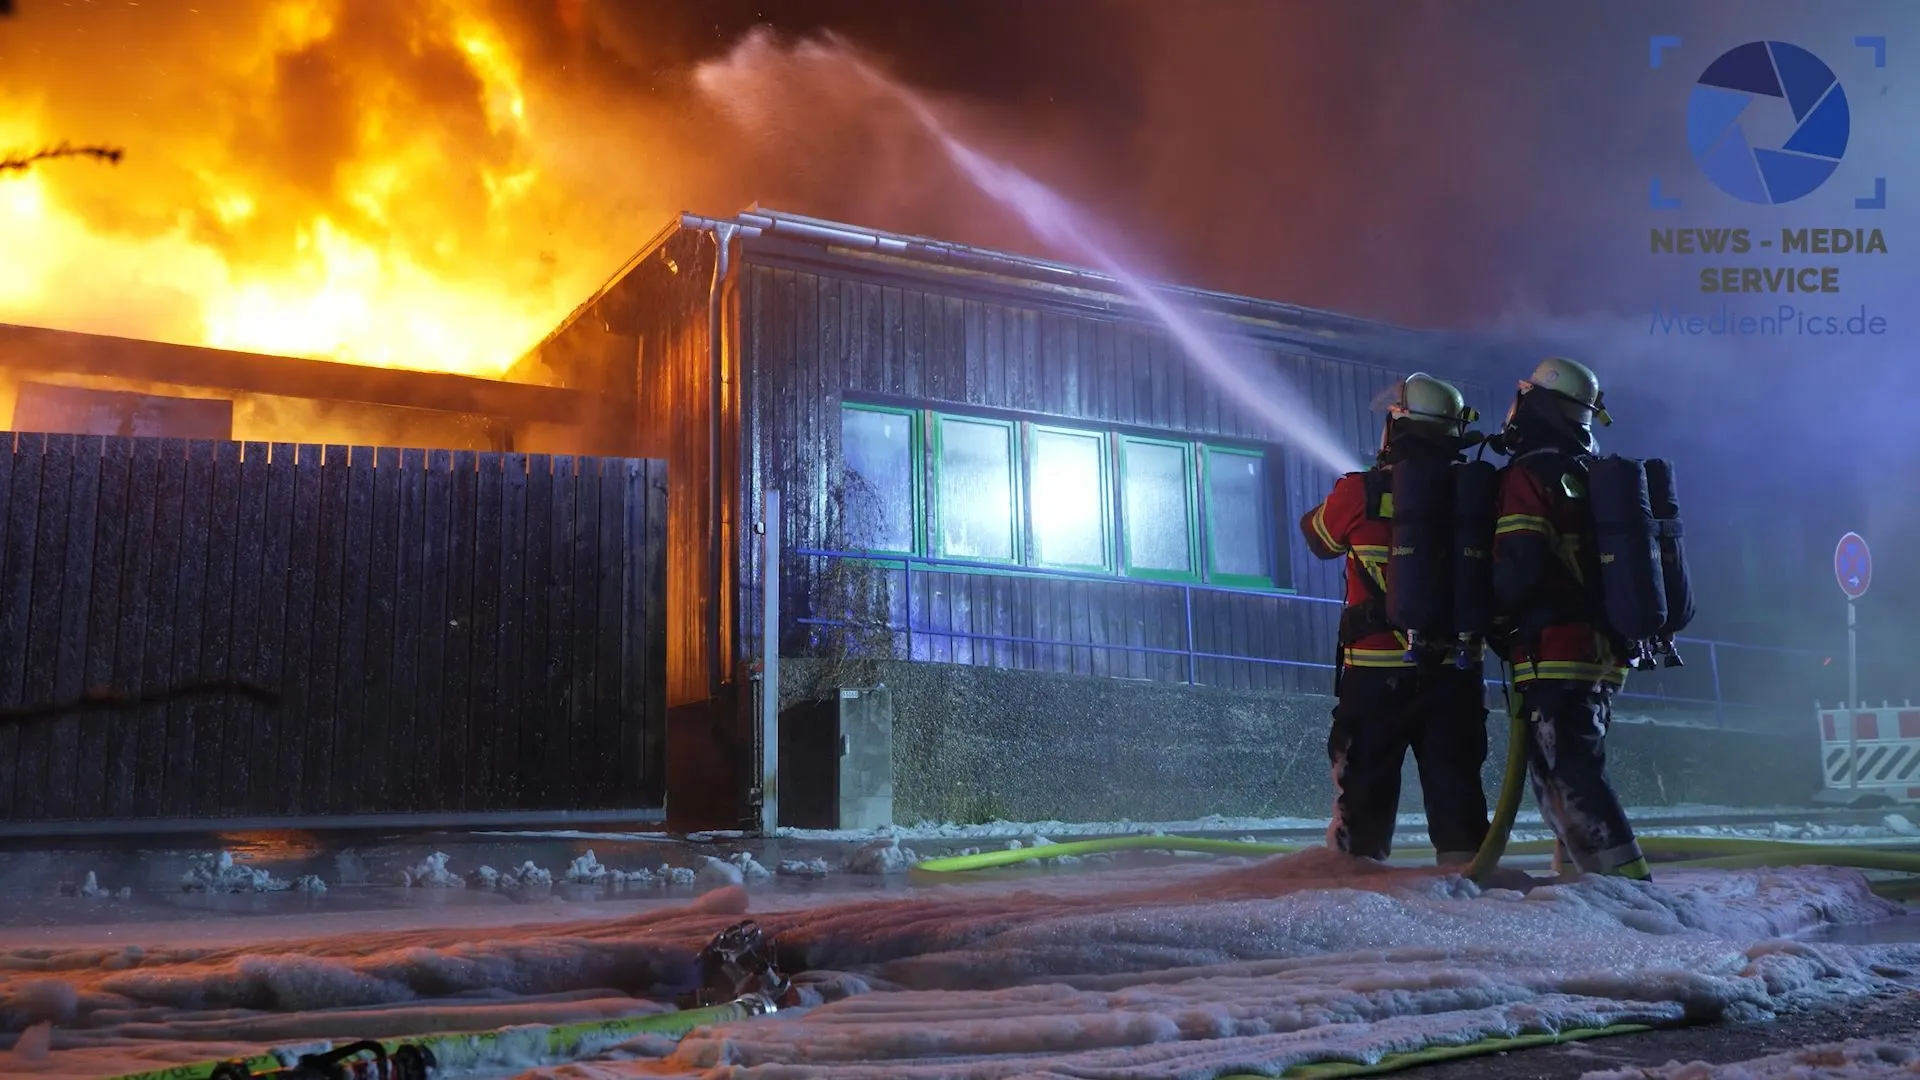 Flammenhölle vernichtet Lebensmittelgroßhändler – 160 Einsatzkräfte vor Ort – Halle in Vollbrand - Mindestens 1 Million Euro Schaden